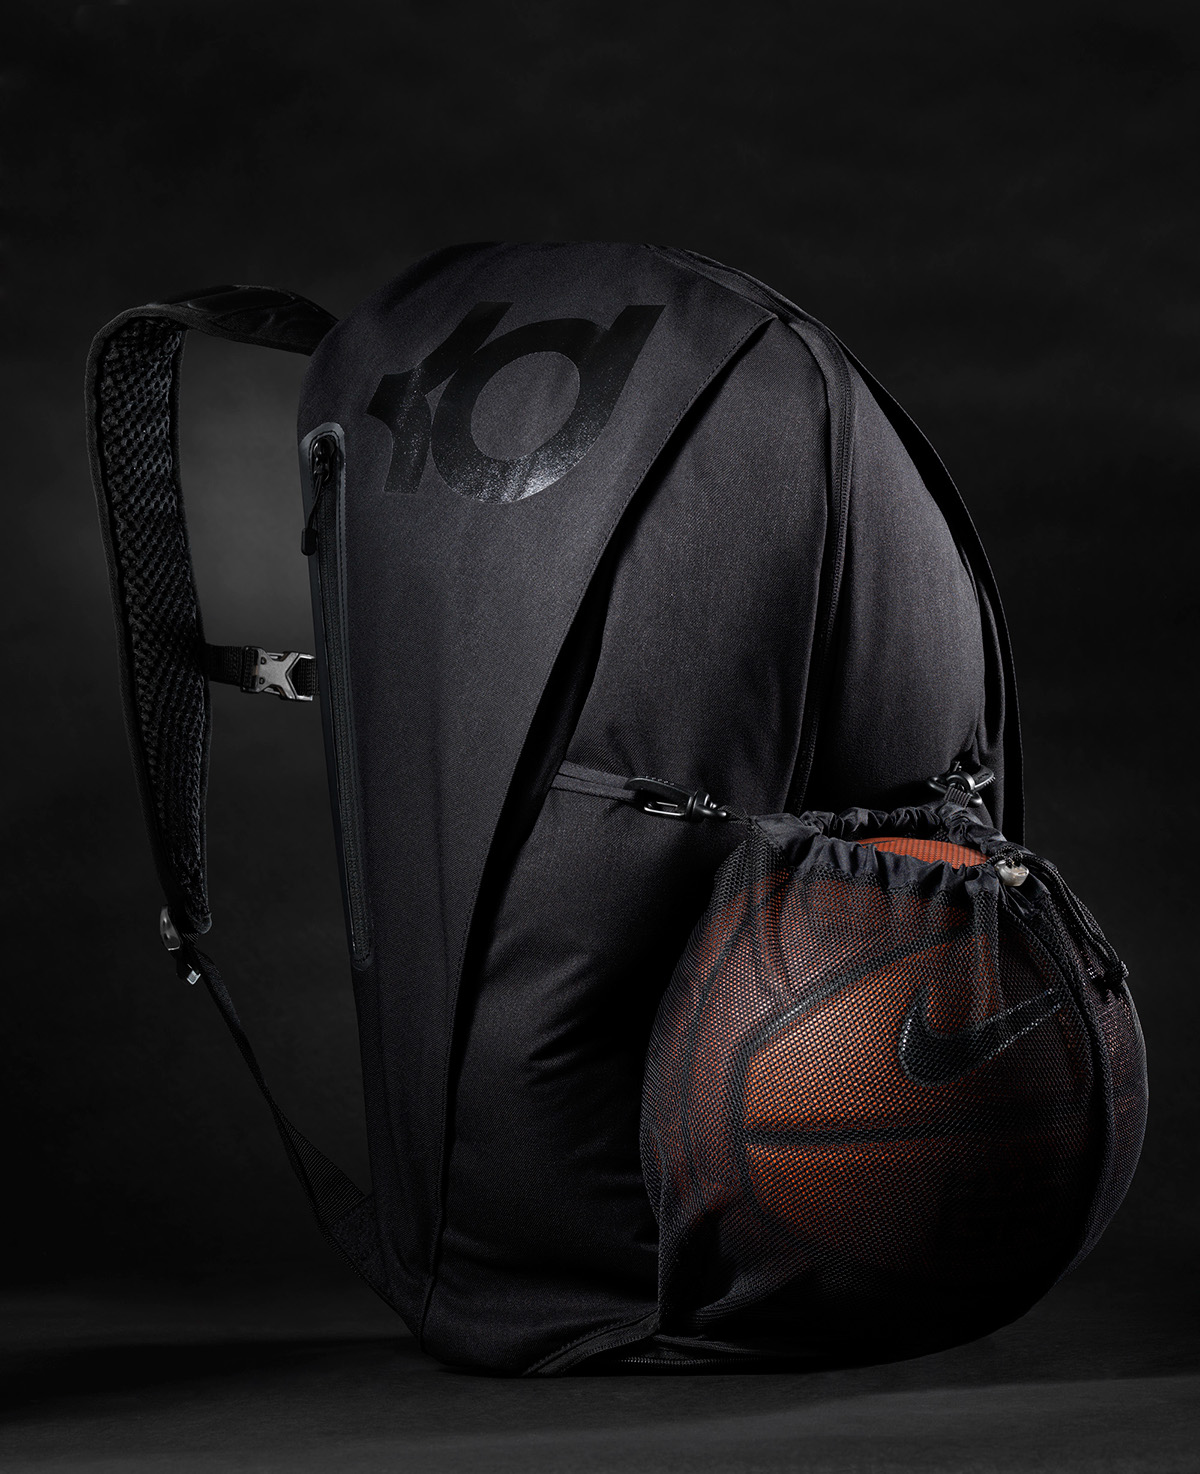 soft goods design bag design kevin durant Nike Backpack basketball backpack Backpack design backpack kd kd backpack